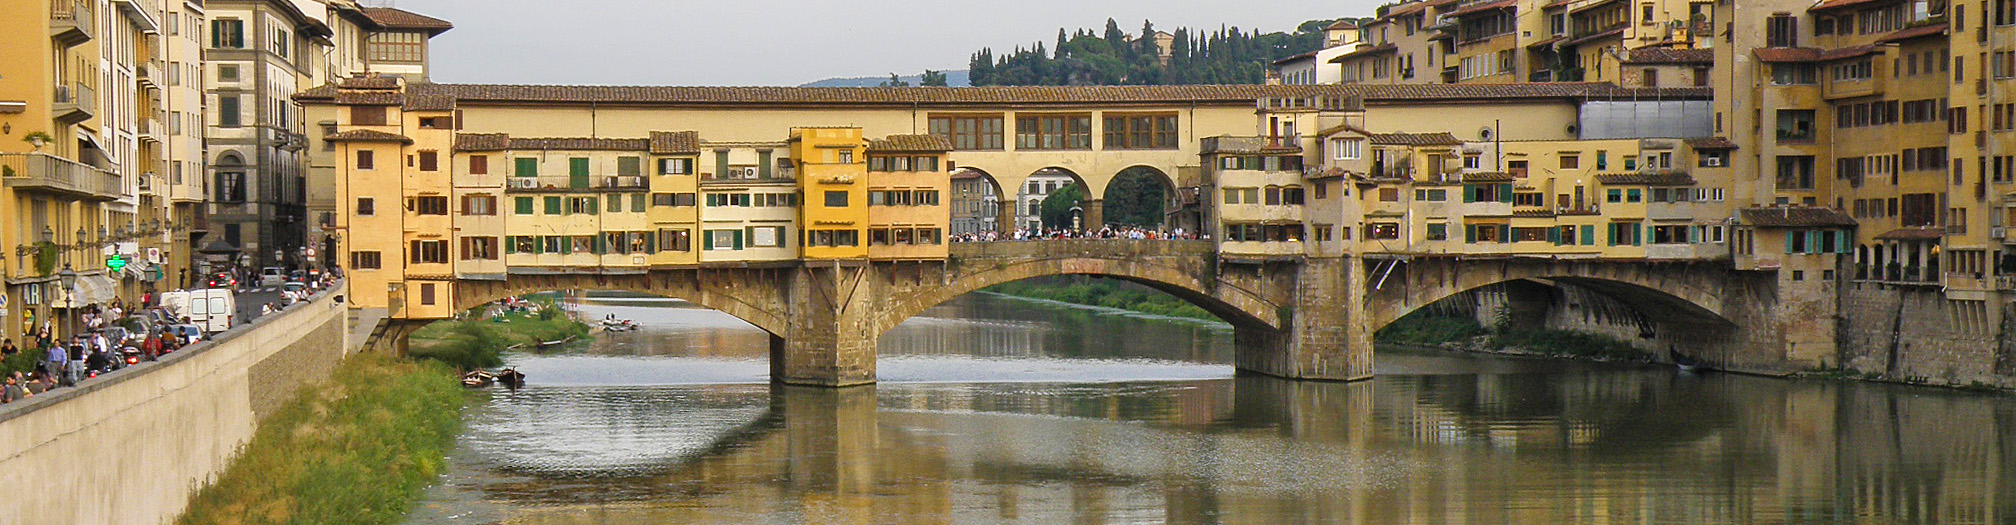 Florence - Il Ponte Vecchio